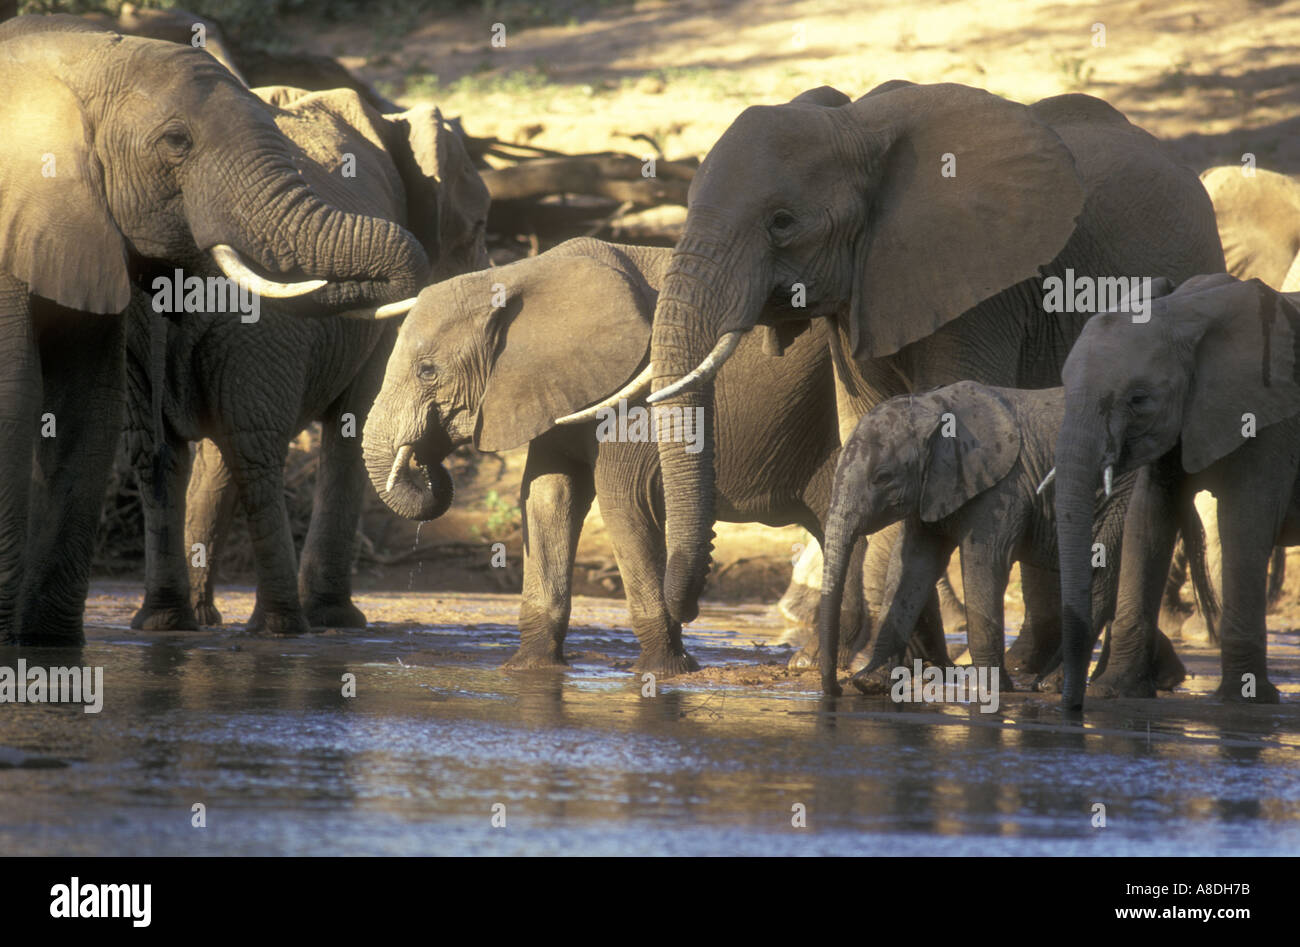 Un groupe familial de femelles et de veaux de l'éléphant de boire dans l'Uaso Nyiro dans la réserve nationale de Samburu, Kenya Afrique de l'Est Banque D'Images